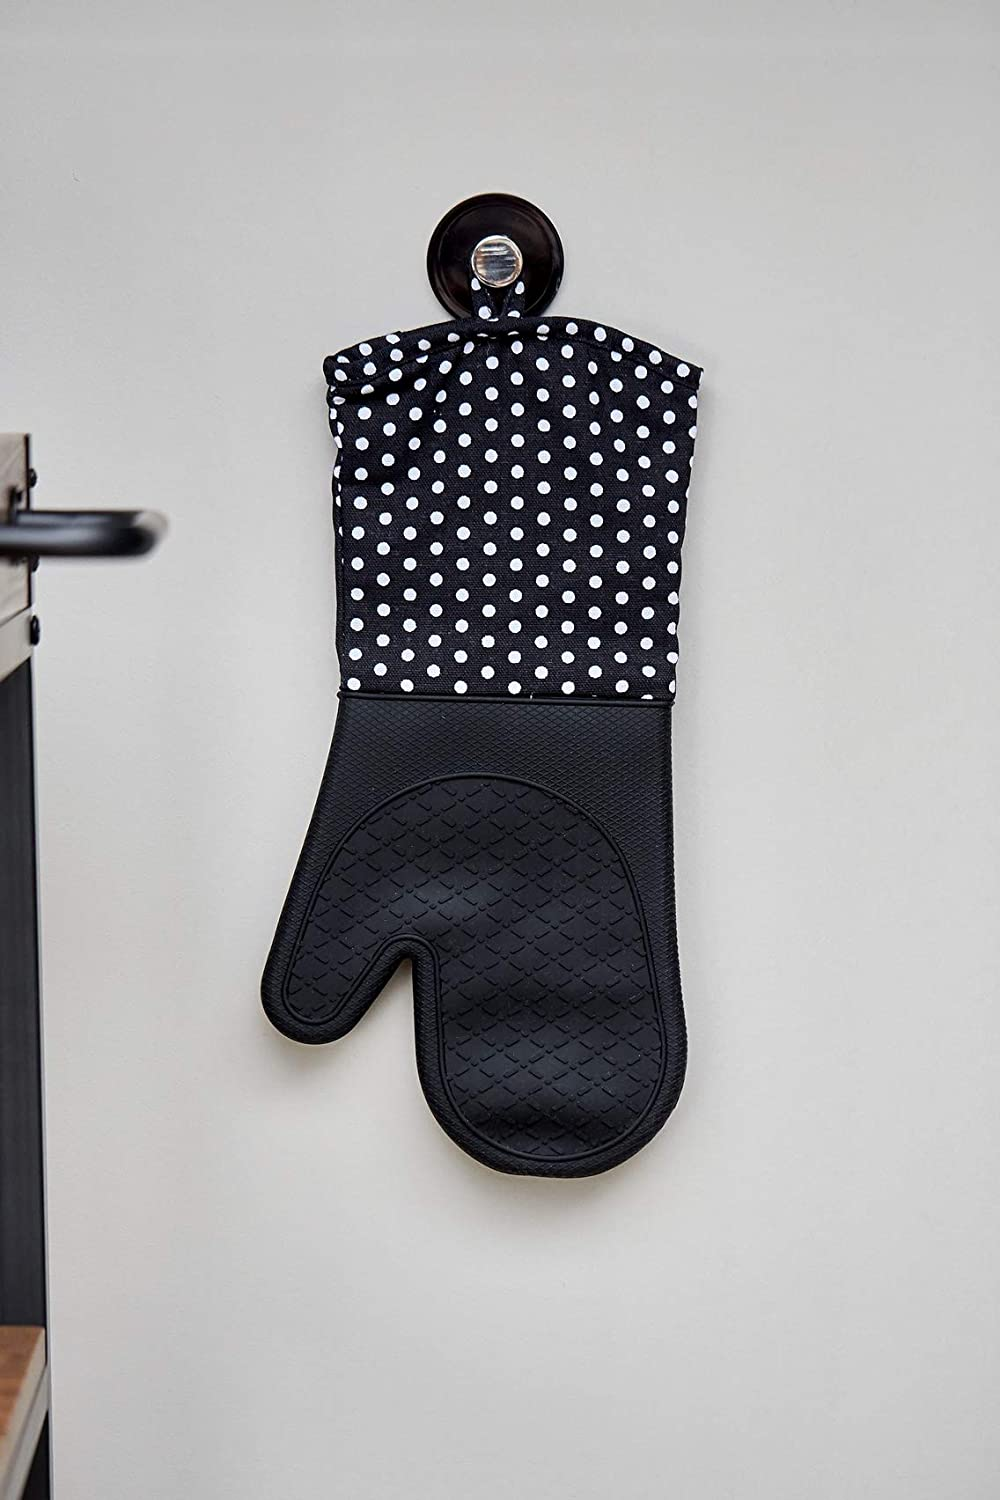 Topfhandschuhe mit Handflächen aus Silikon, 1 Paar, praktischer Küchenhelfer, auch als Grillhandschuh verwendbar, hitzebeständig, 18,5 x 37,5 cm, Schwarz